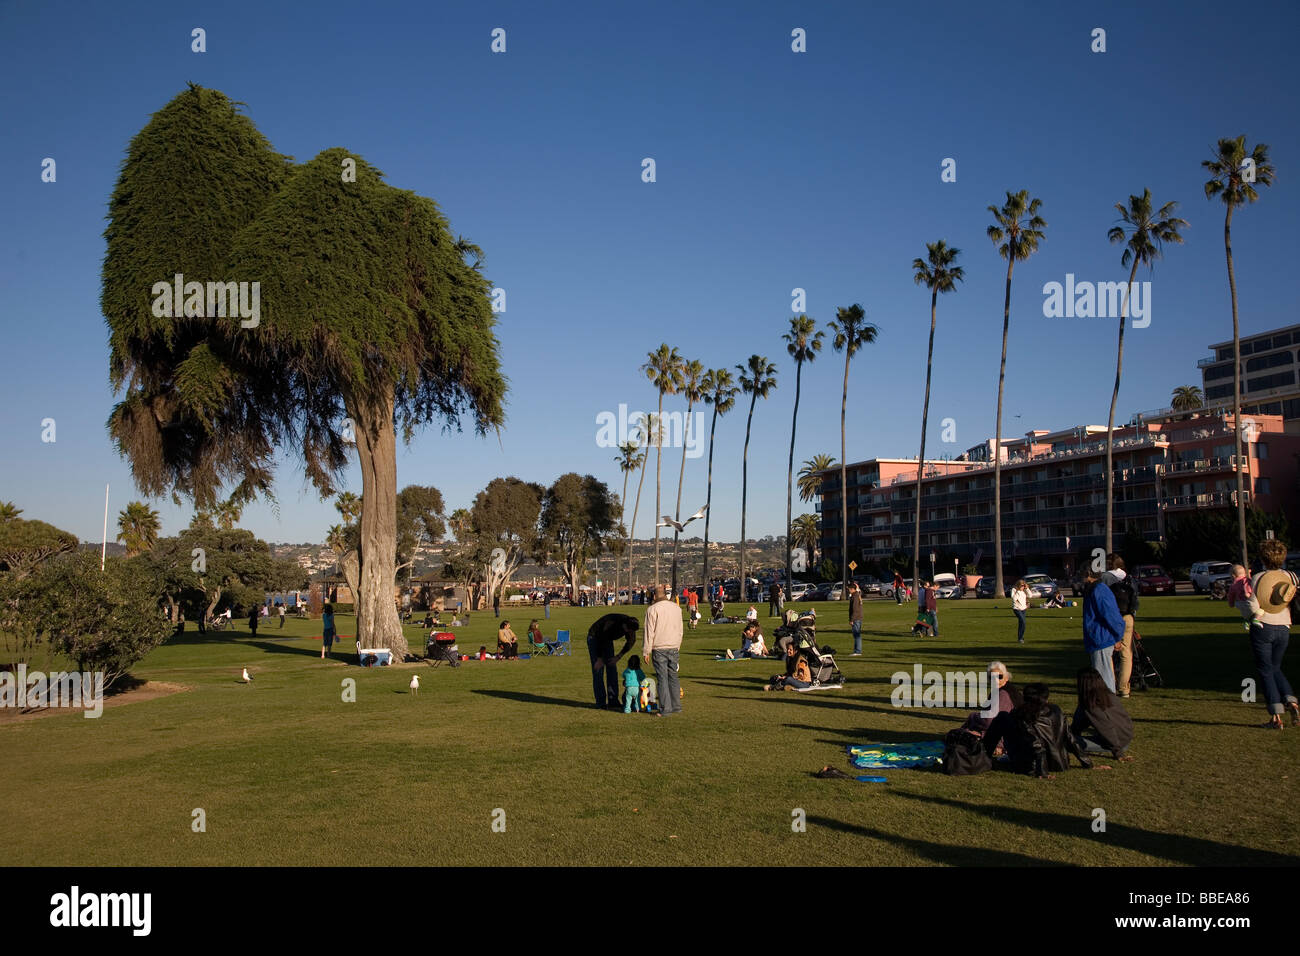 La gente disfruta del parque de hierba en La Jolla Cove, La Jolla, California Foto de stock